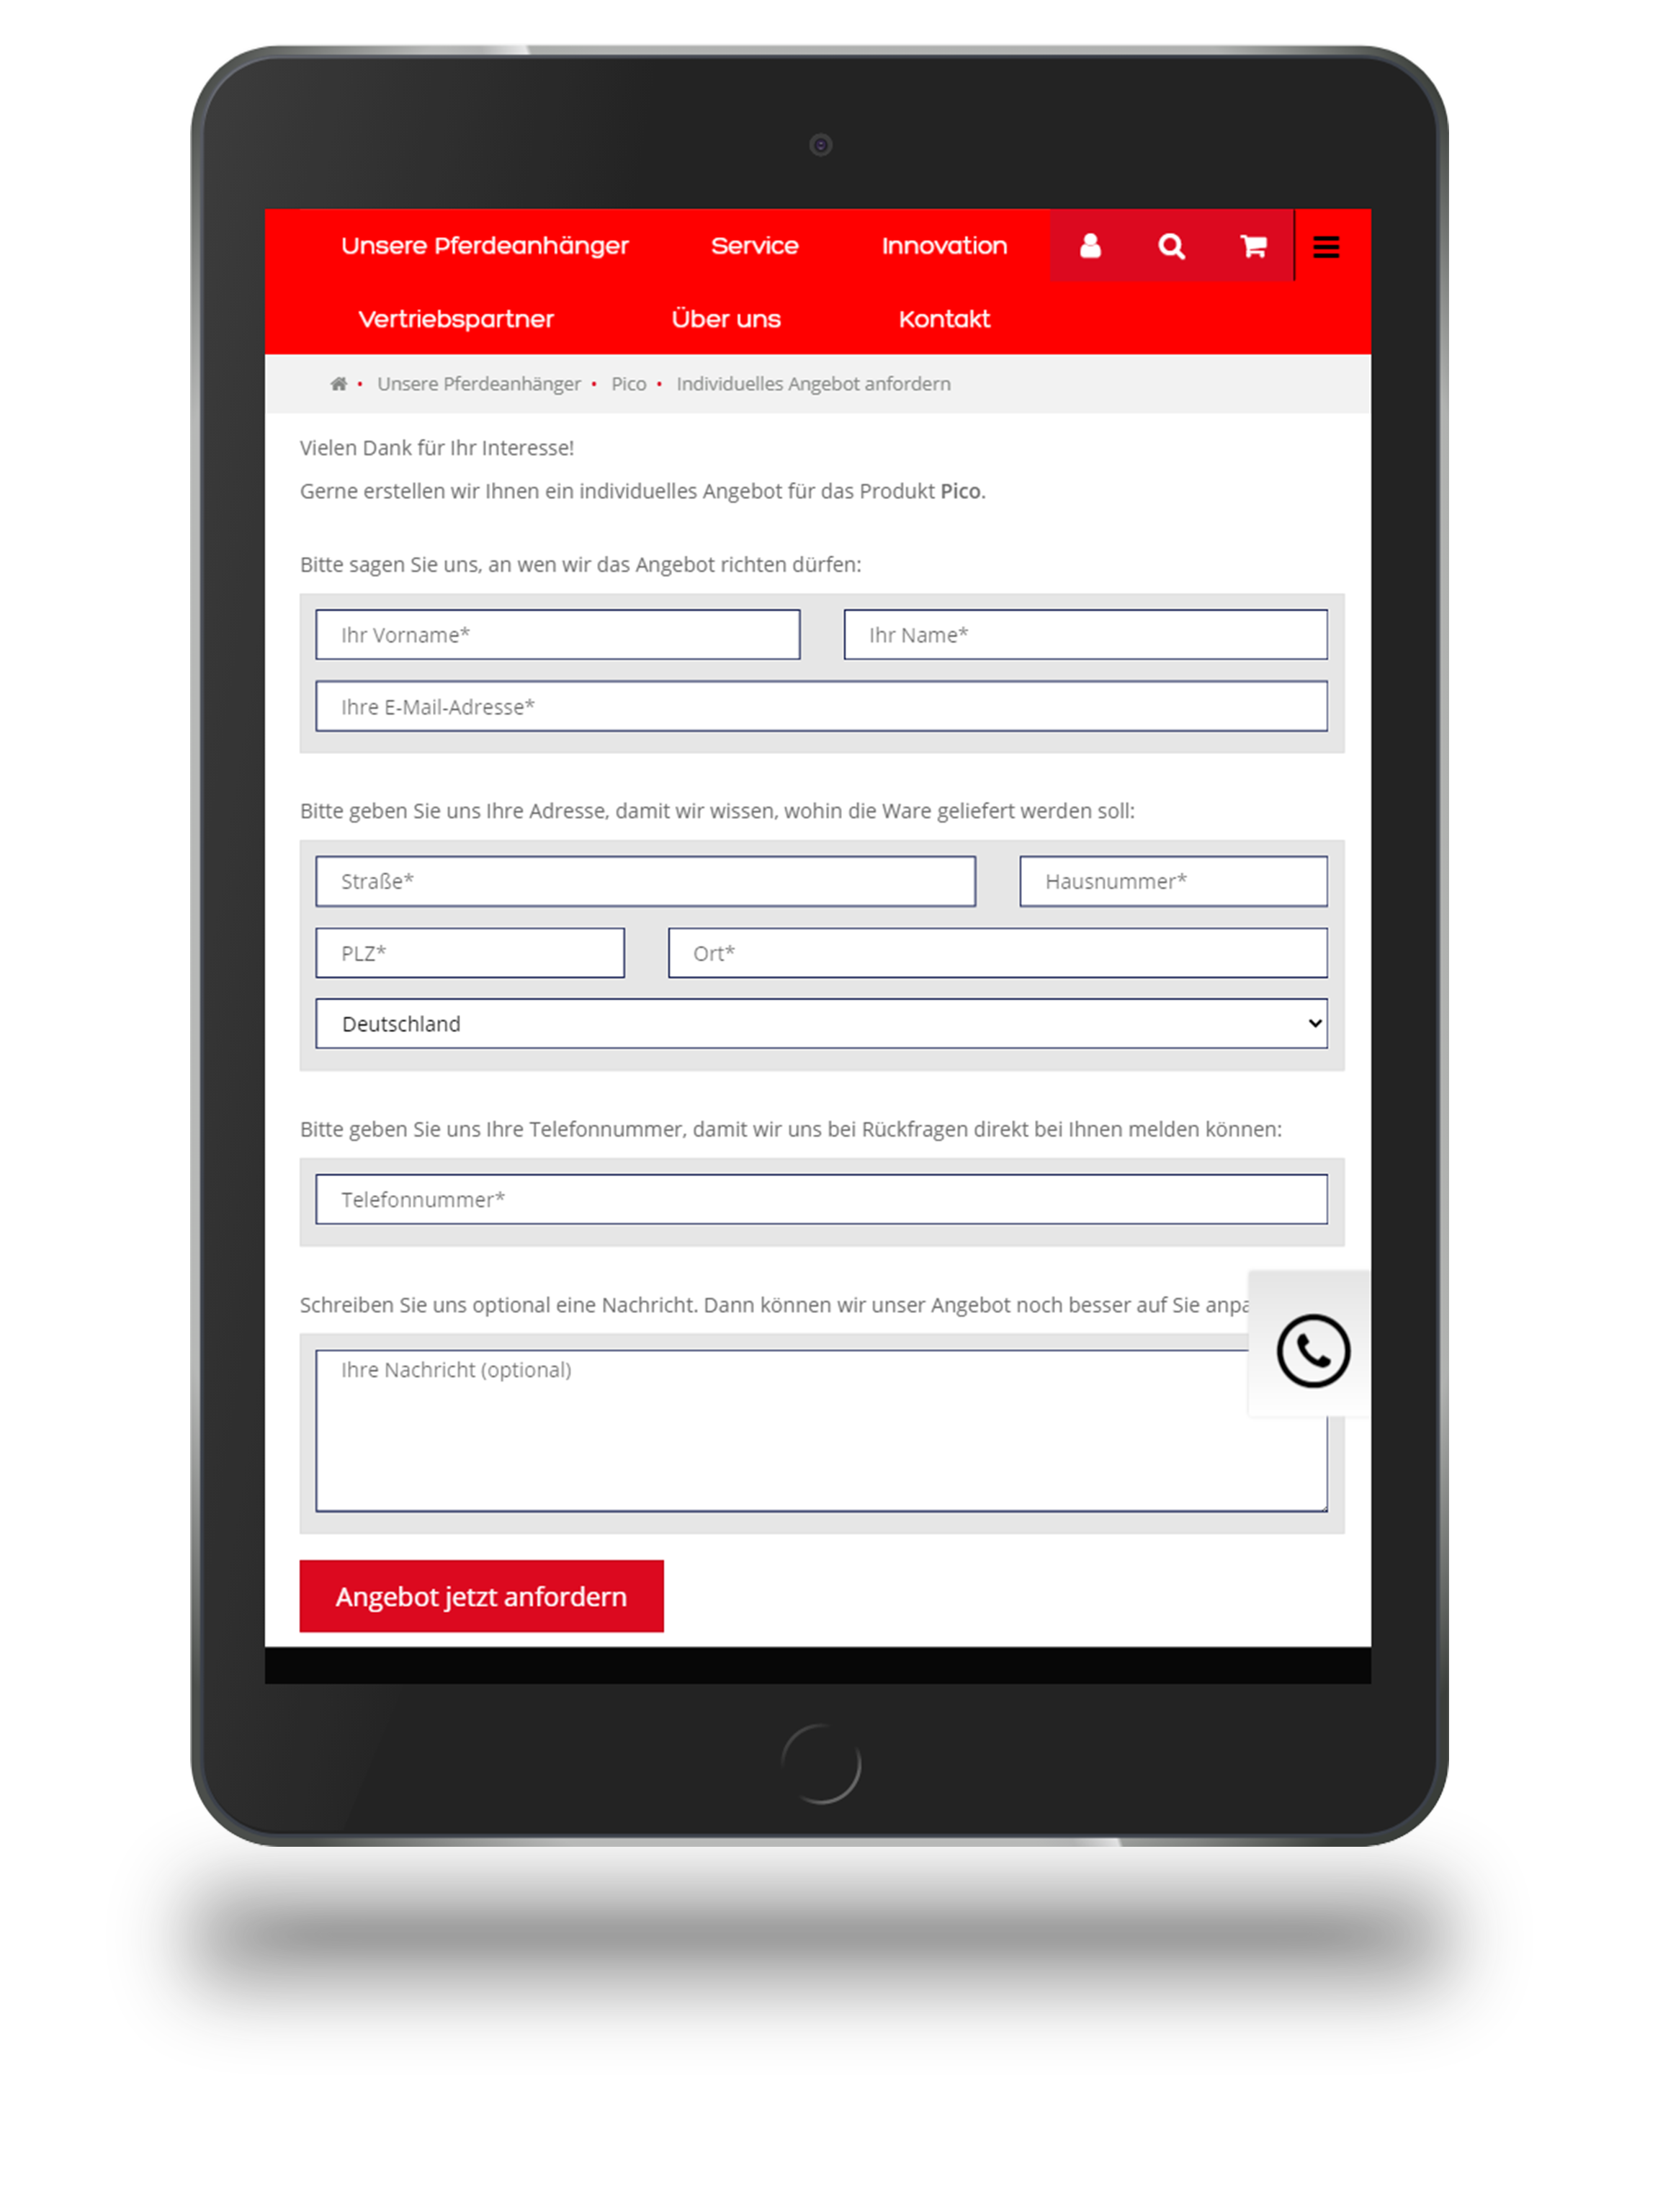 Anfrageformular für Angebote und Preisanfragen von konfigurierten Anhängern beim Onlineshop von Thiel aus Pfullendorf